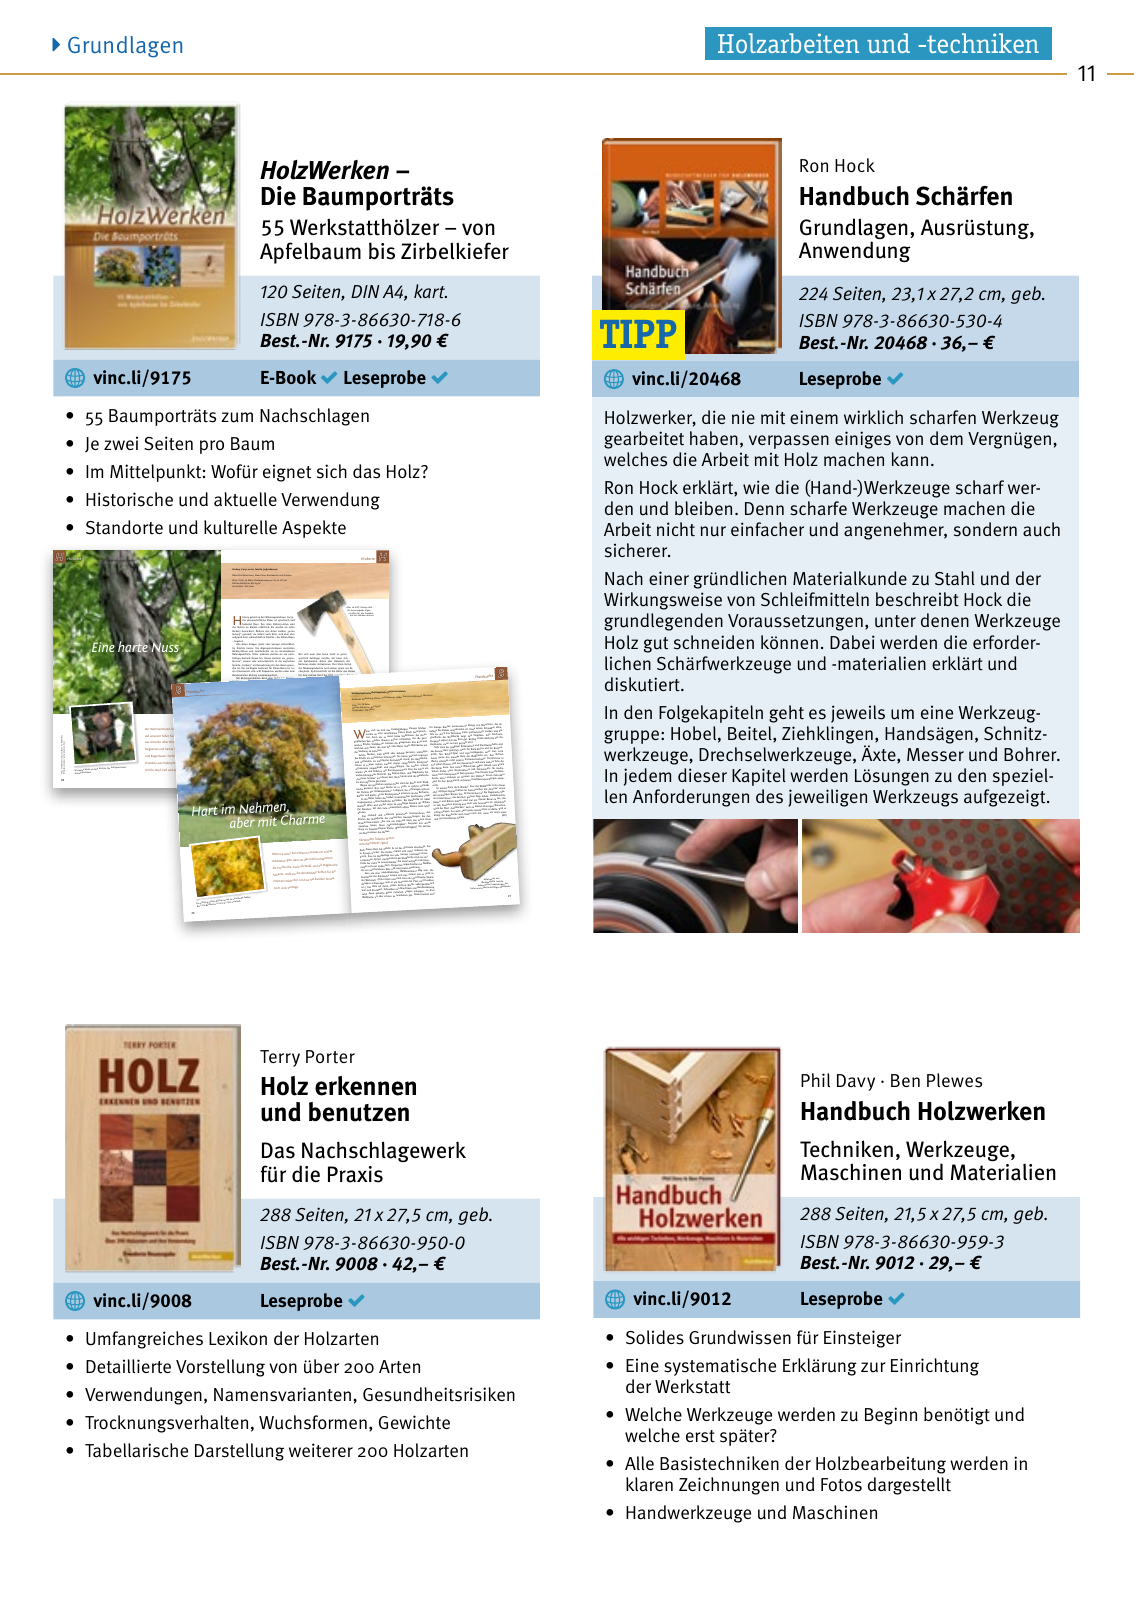 Vorschau HolzWerken Katalog 2019 Seite 11